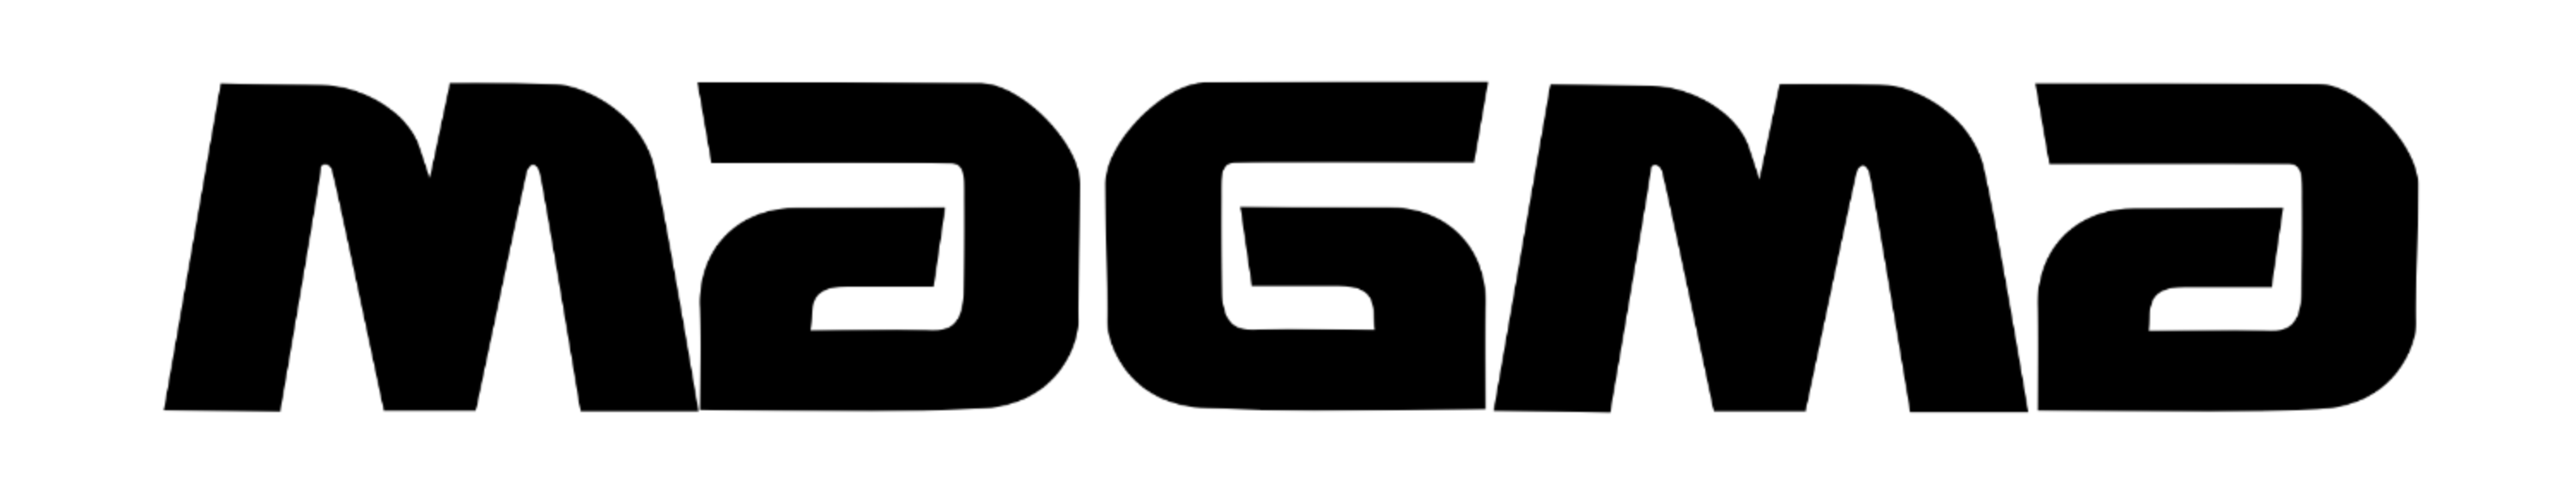 Magma Bags logo